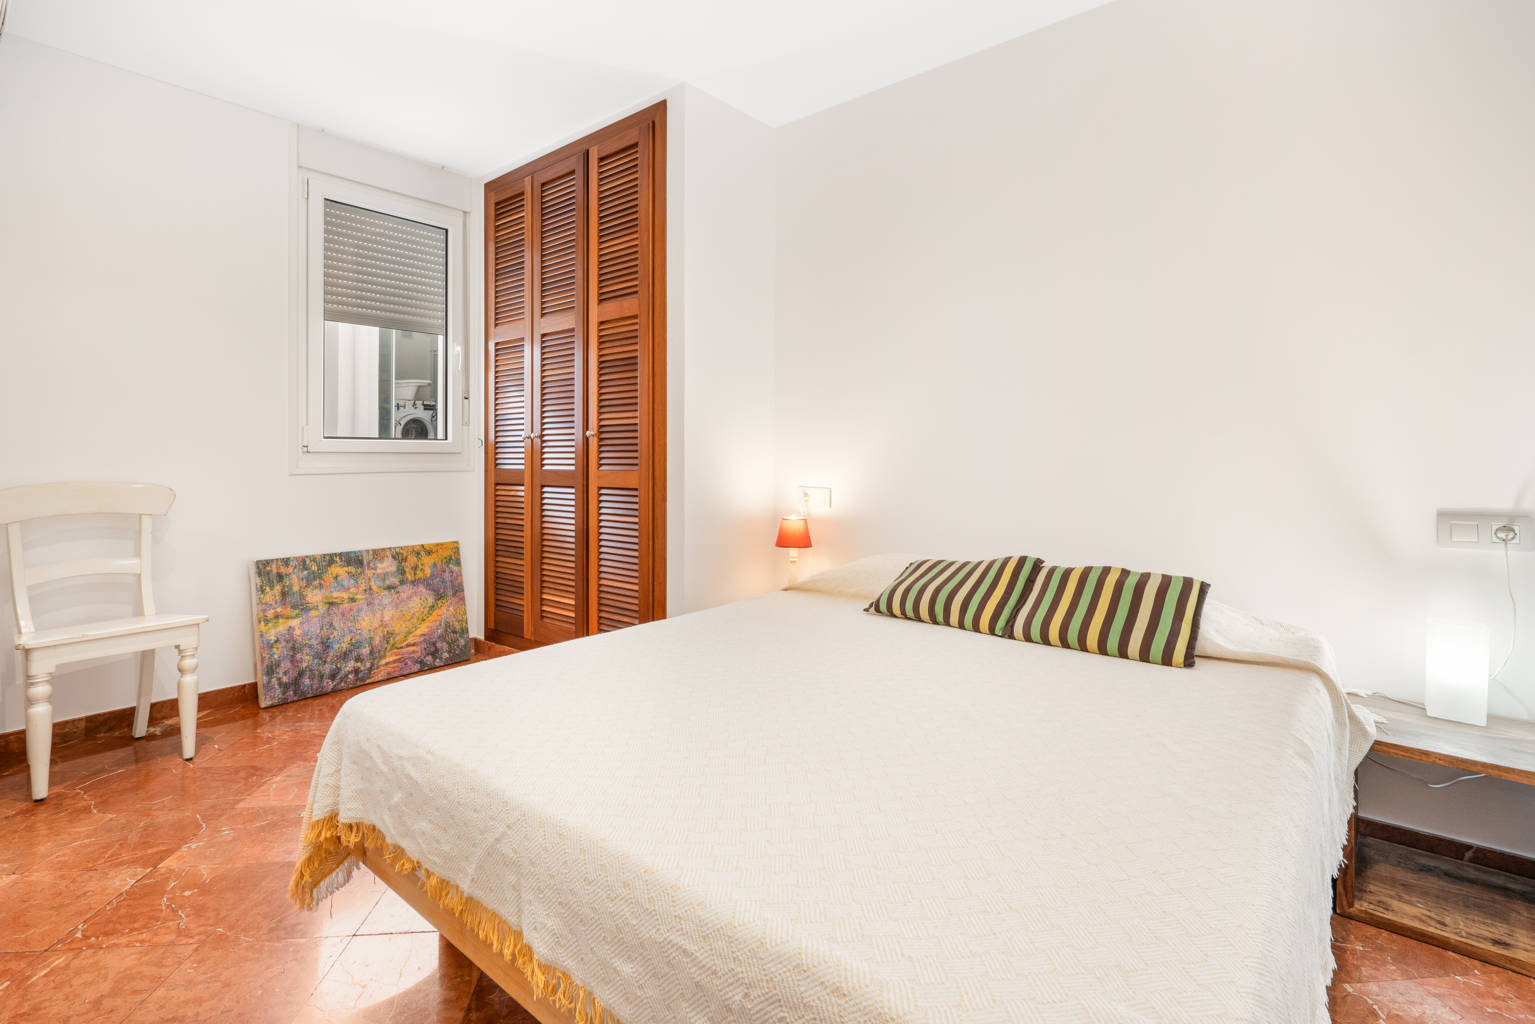 Flat for sale 3 bedrooms Ciutadella